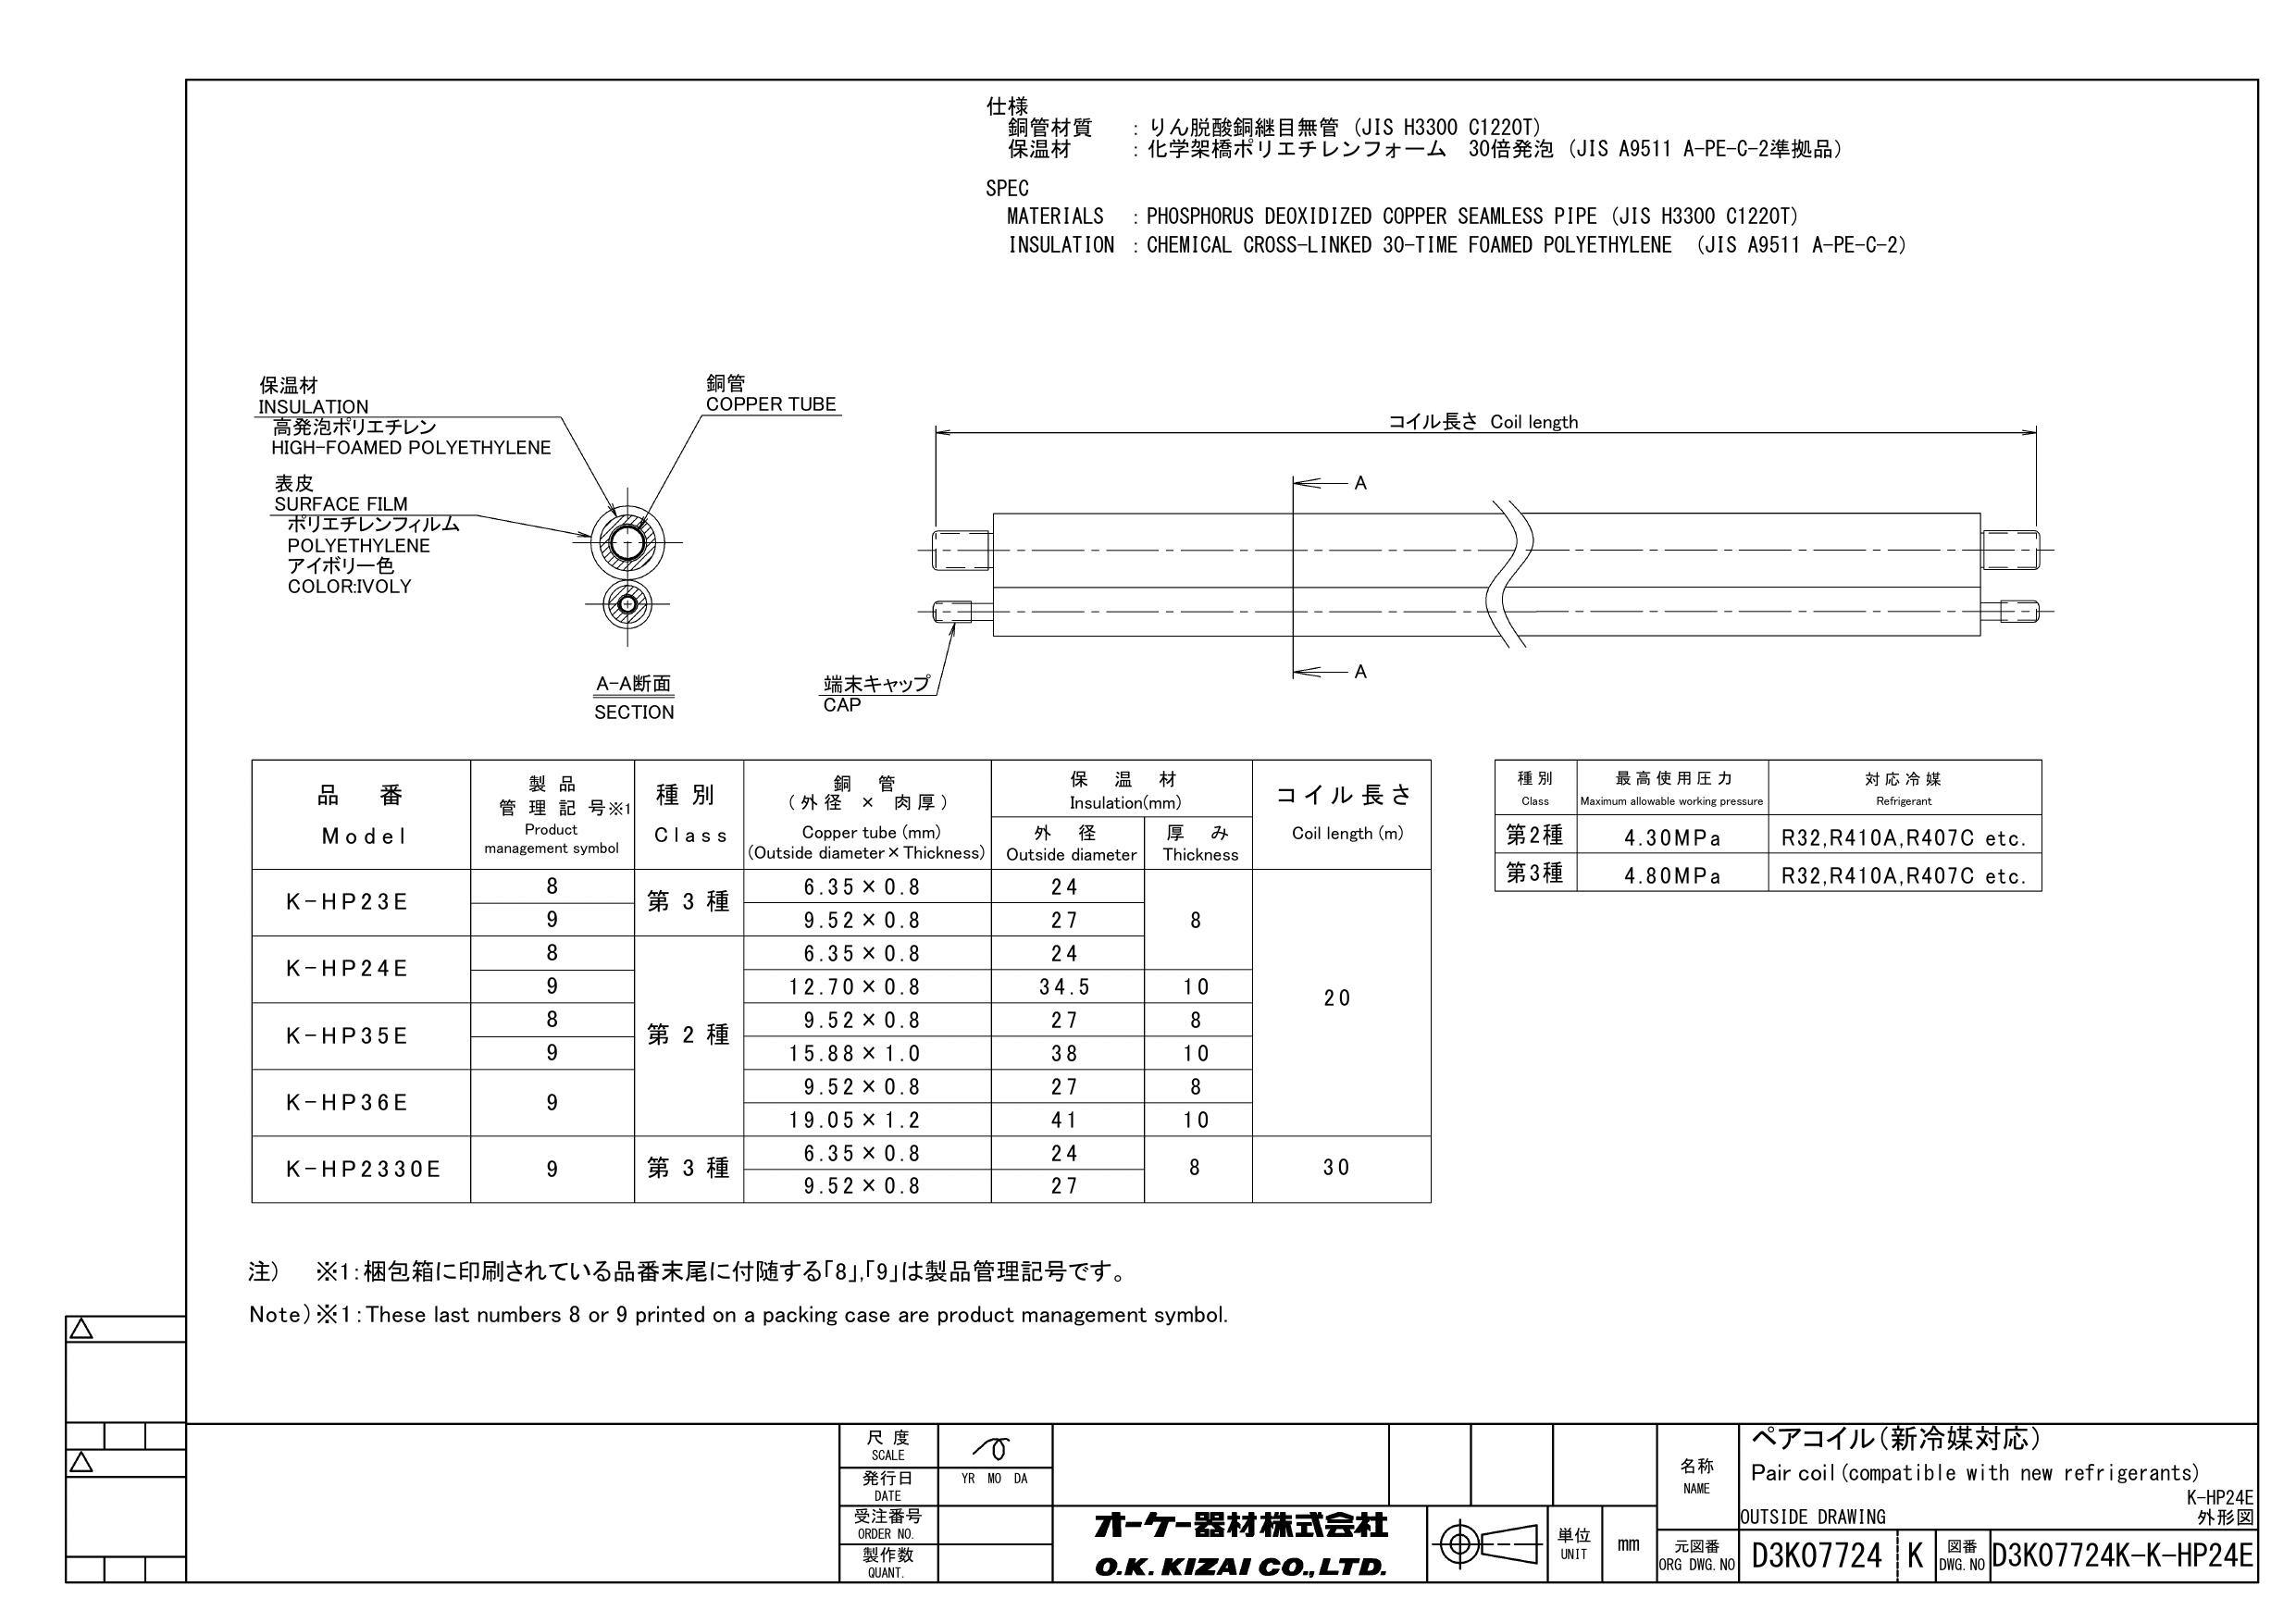 イシグロ オーケー器材 K-HP24E 20M 10t被覆銅管 ペアコイル 6.35X12